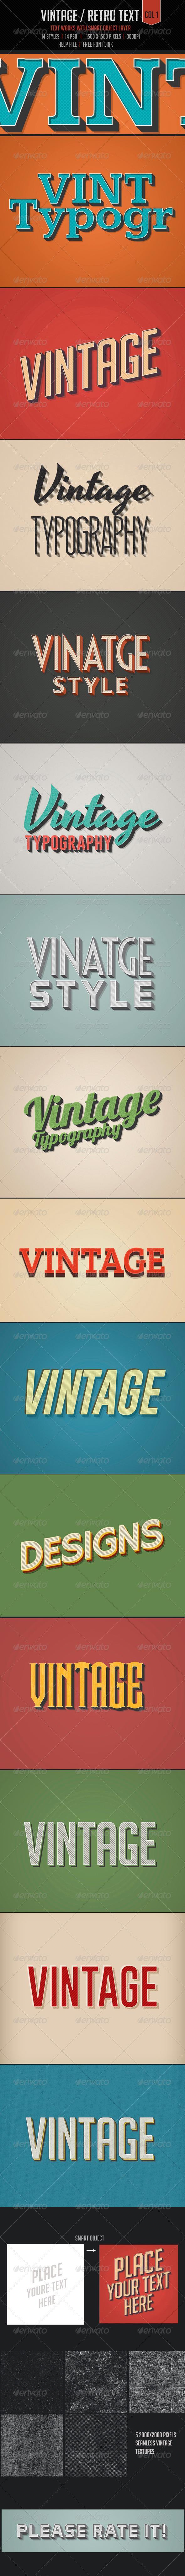 3D Vintage Retro Text Photoshop Style